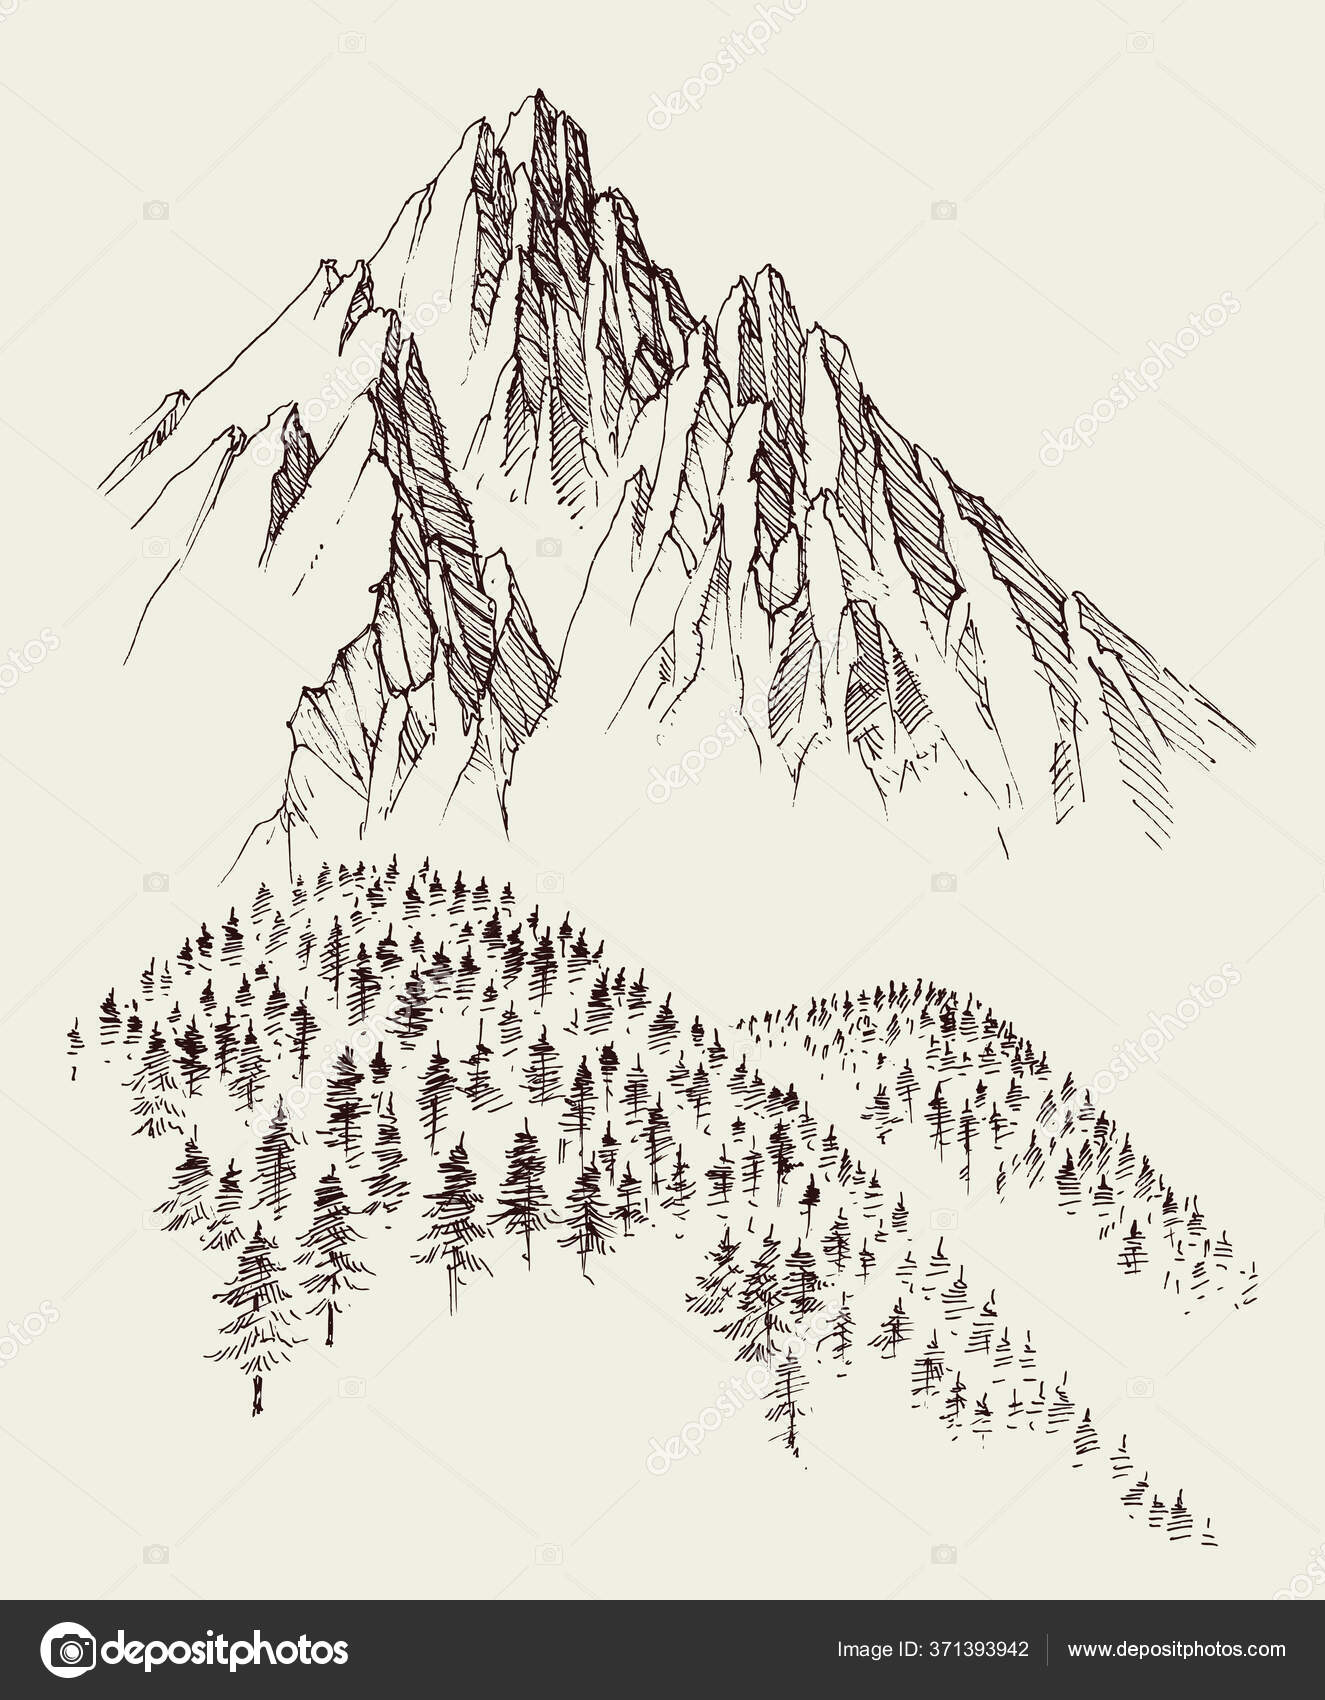 Aggregate 233+ mountain sketch art